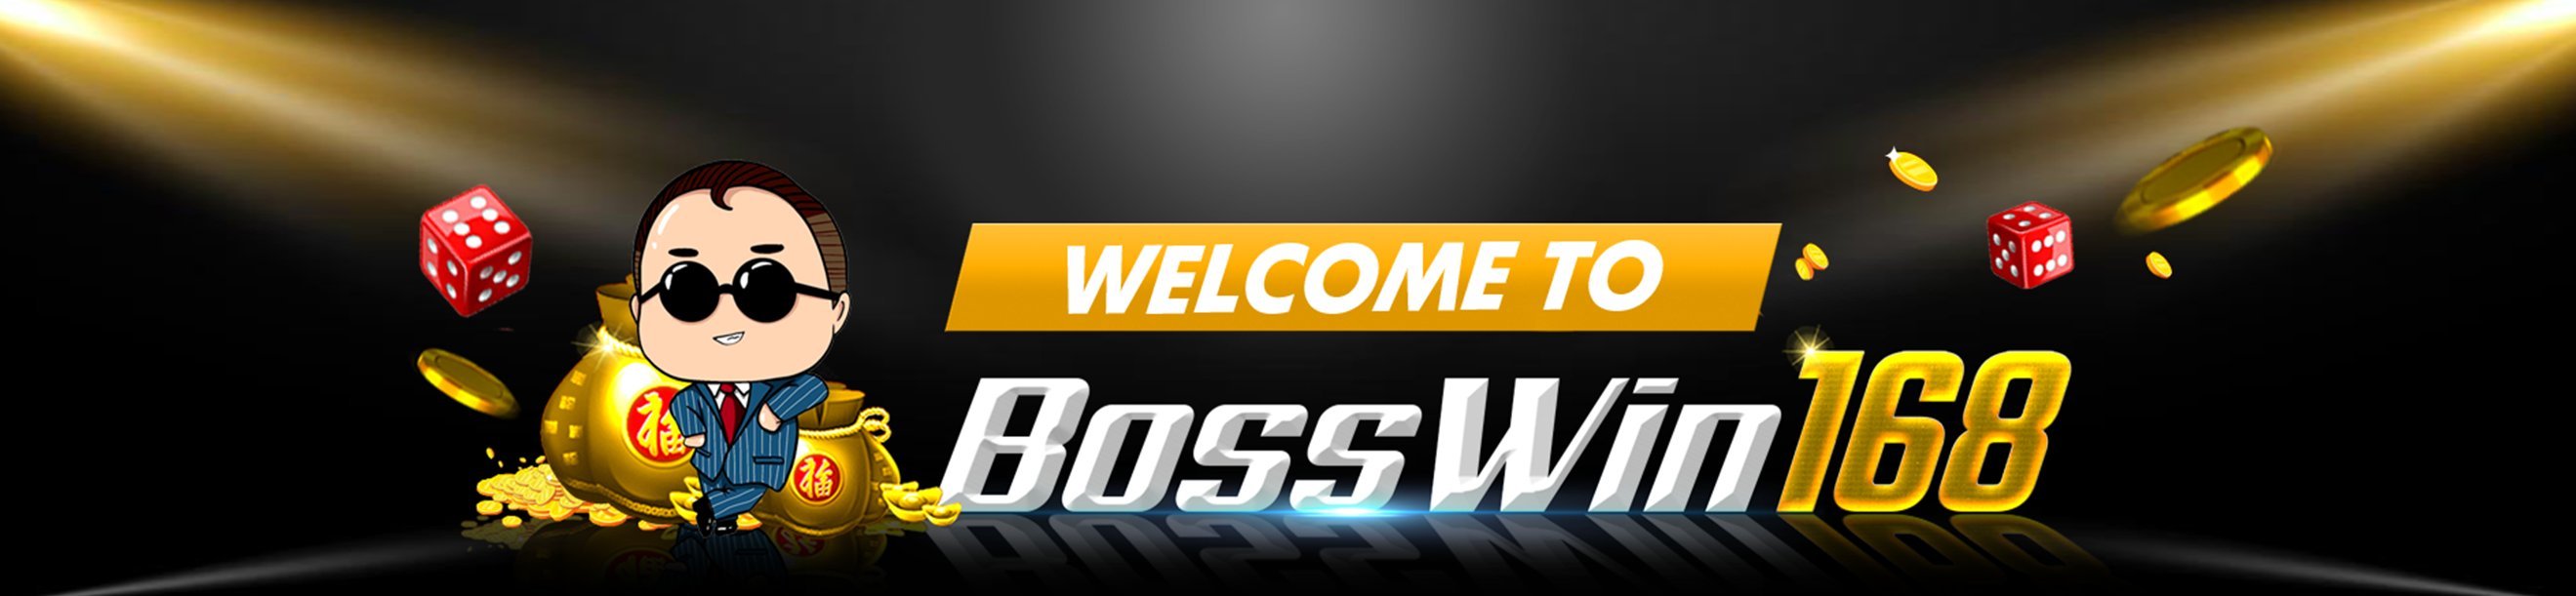 ALTERNATIF Bosswin168 Slot | Boswin168 Slot | Bosswin168 slot Online